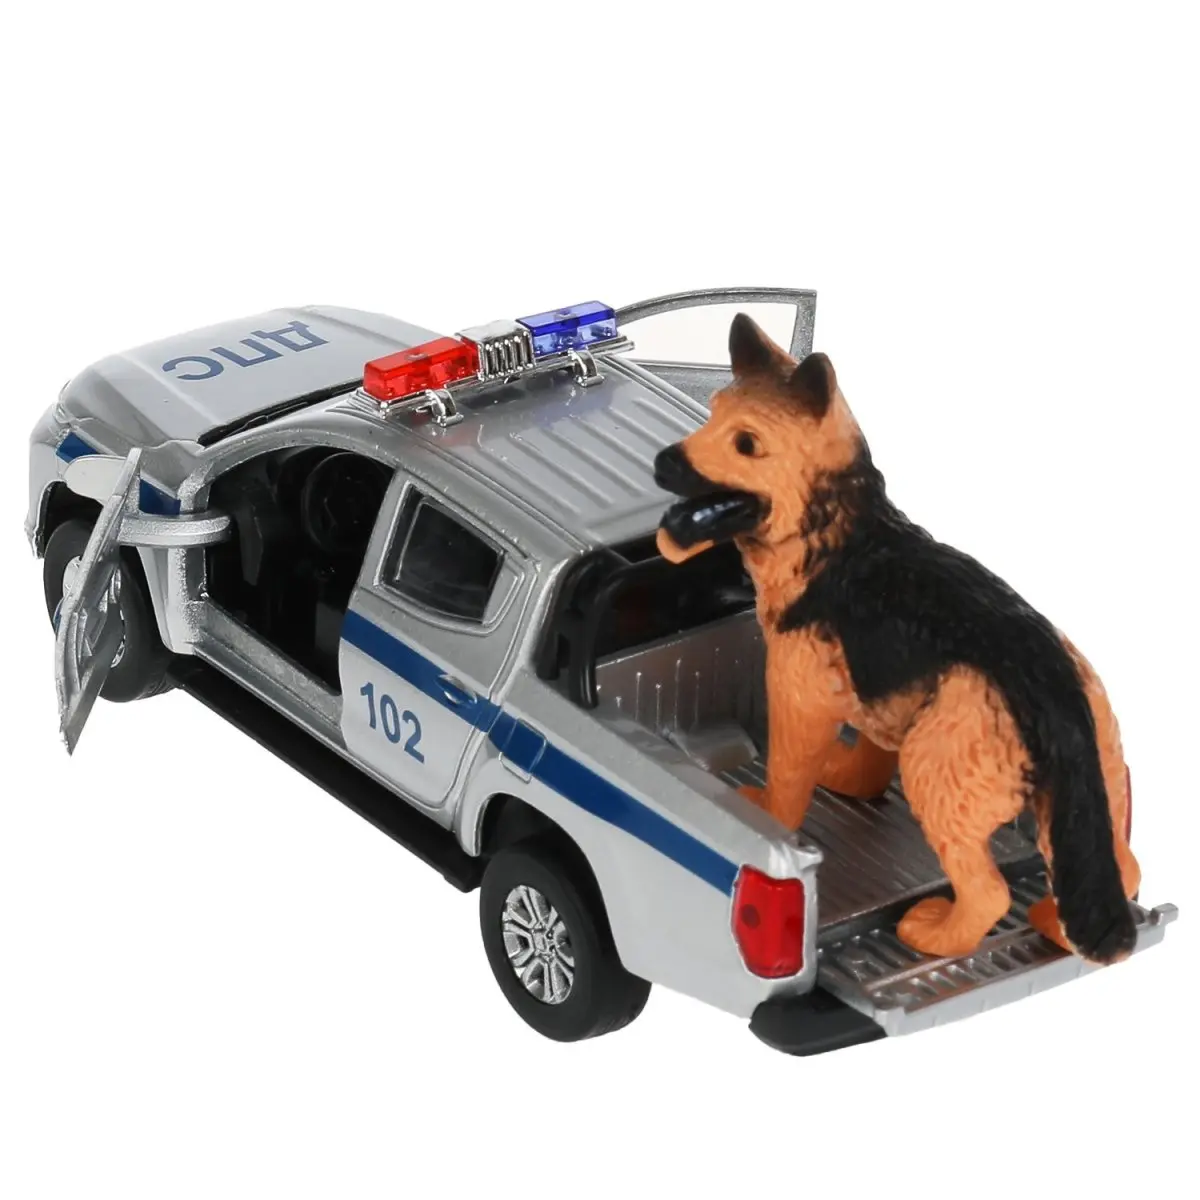 Машина UAZ Pickup Полиция - фото